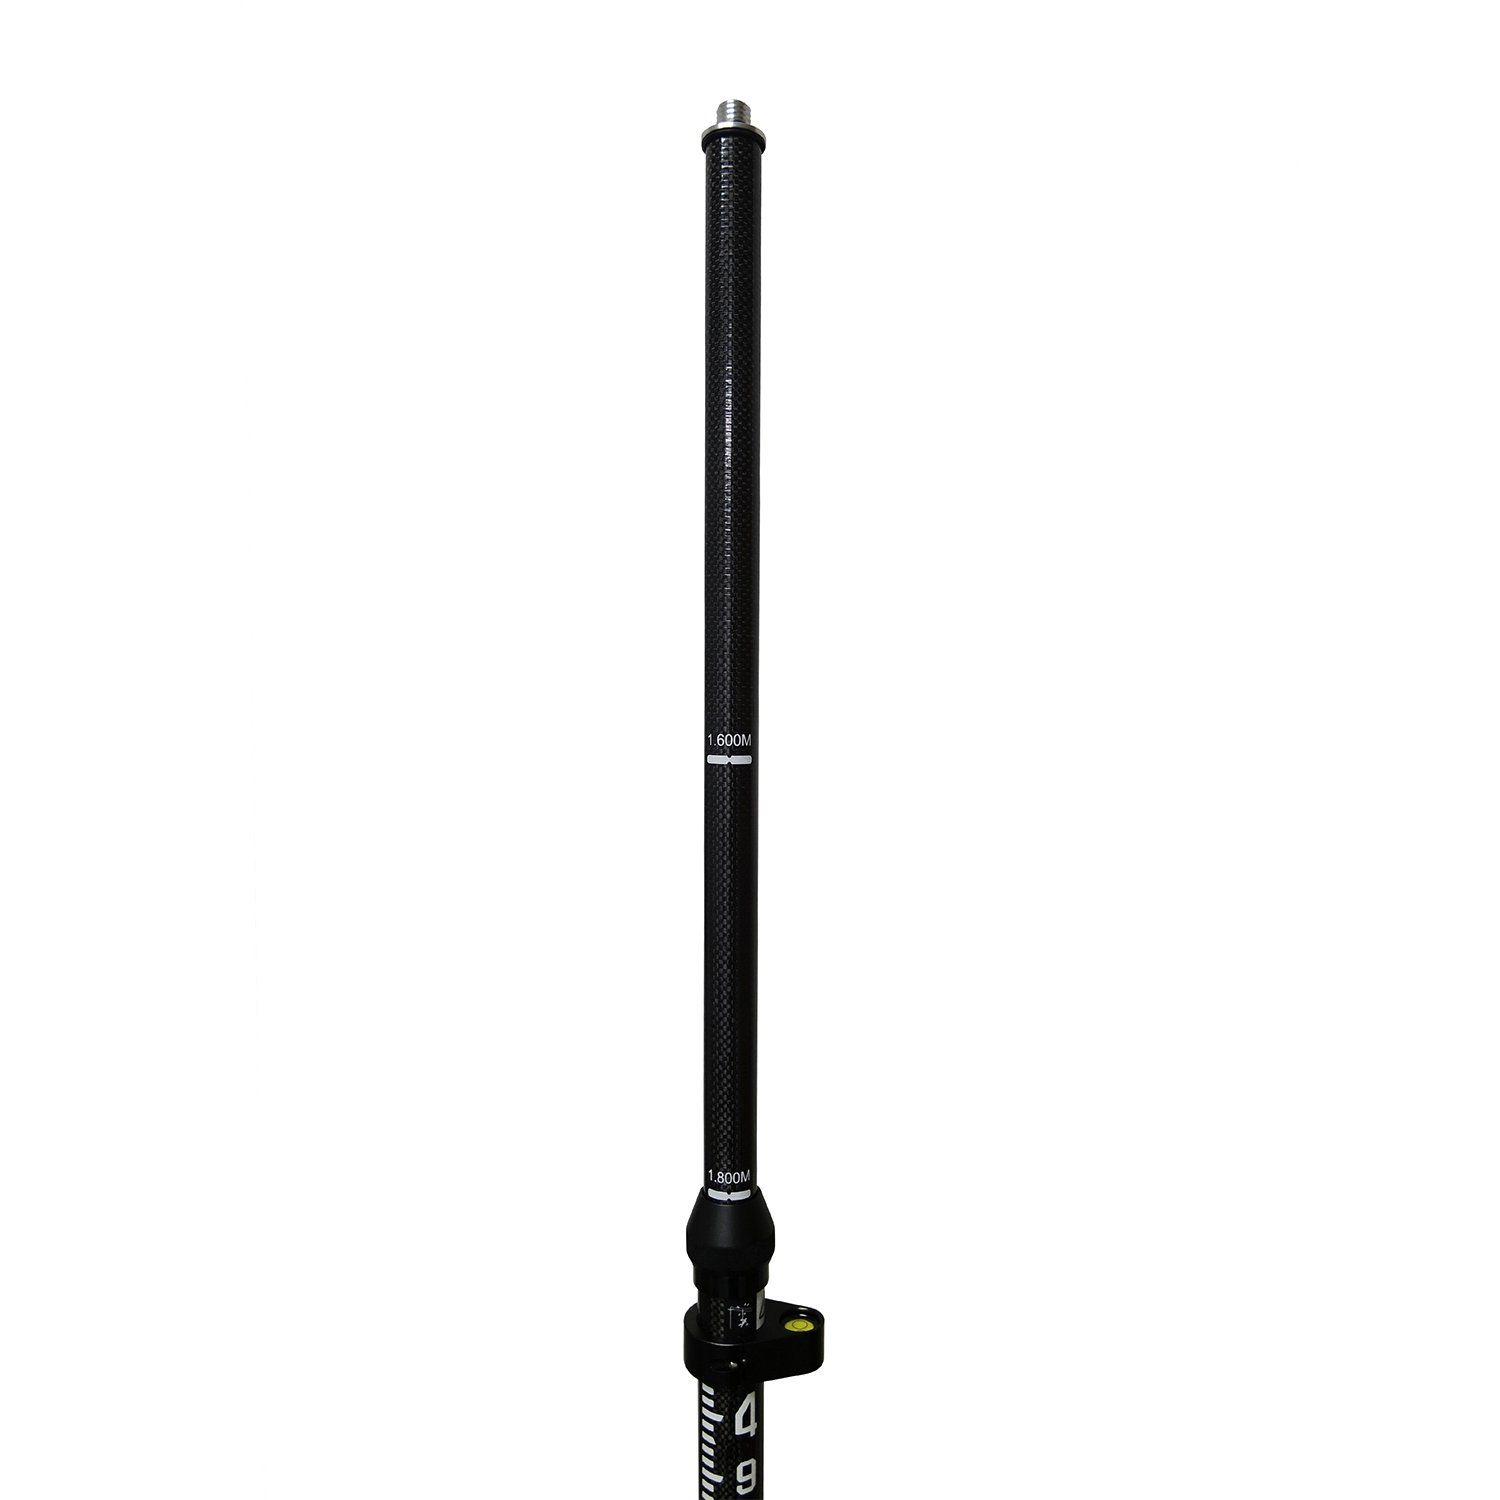 GLS30, GNSS telescopic pole,carbon-fibre – Spatial Technologies Online Store